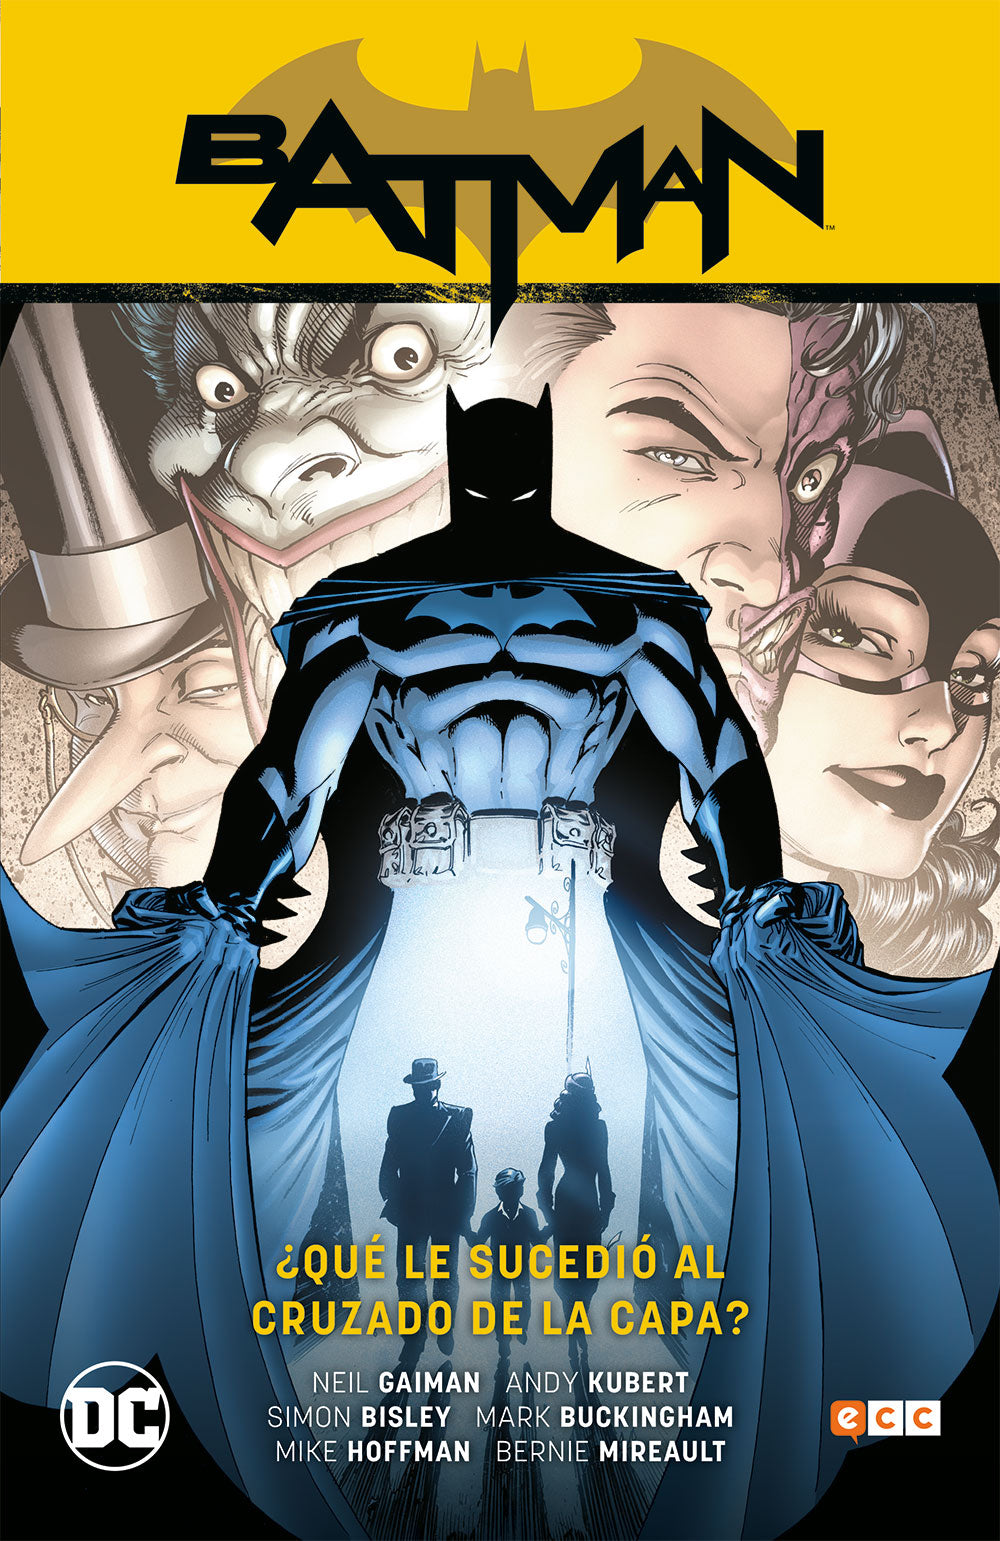 Batman vol. 08: ¿Qué le sucedió al Cruzado de la Capa? (Batman Saga - Batman R.I.P. Parte 6) Ecc ENcuadrocomics